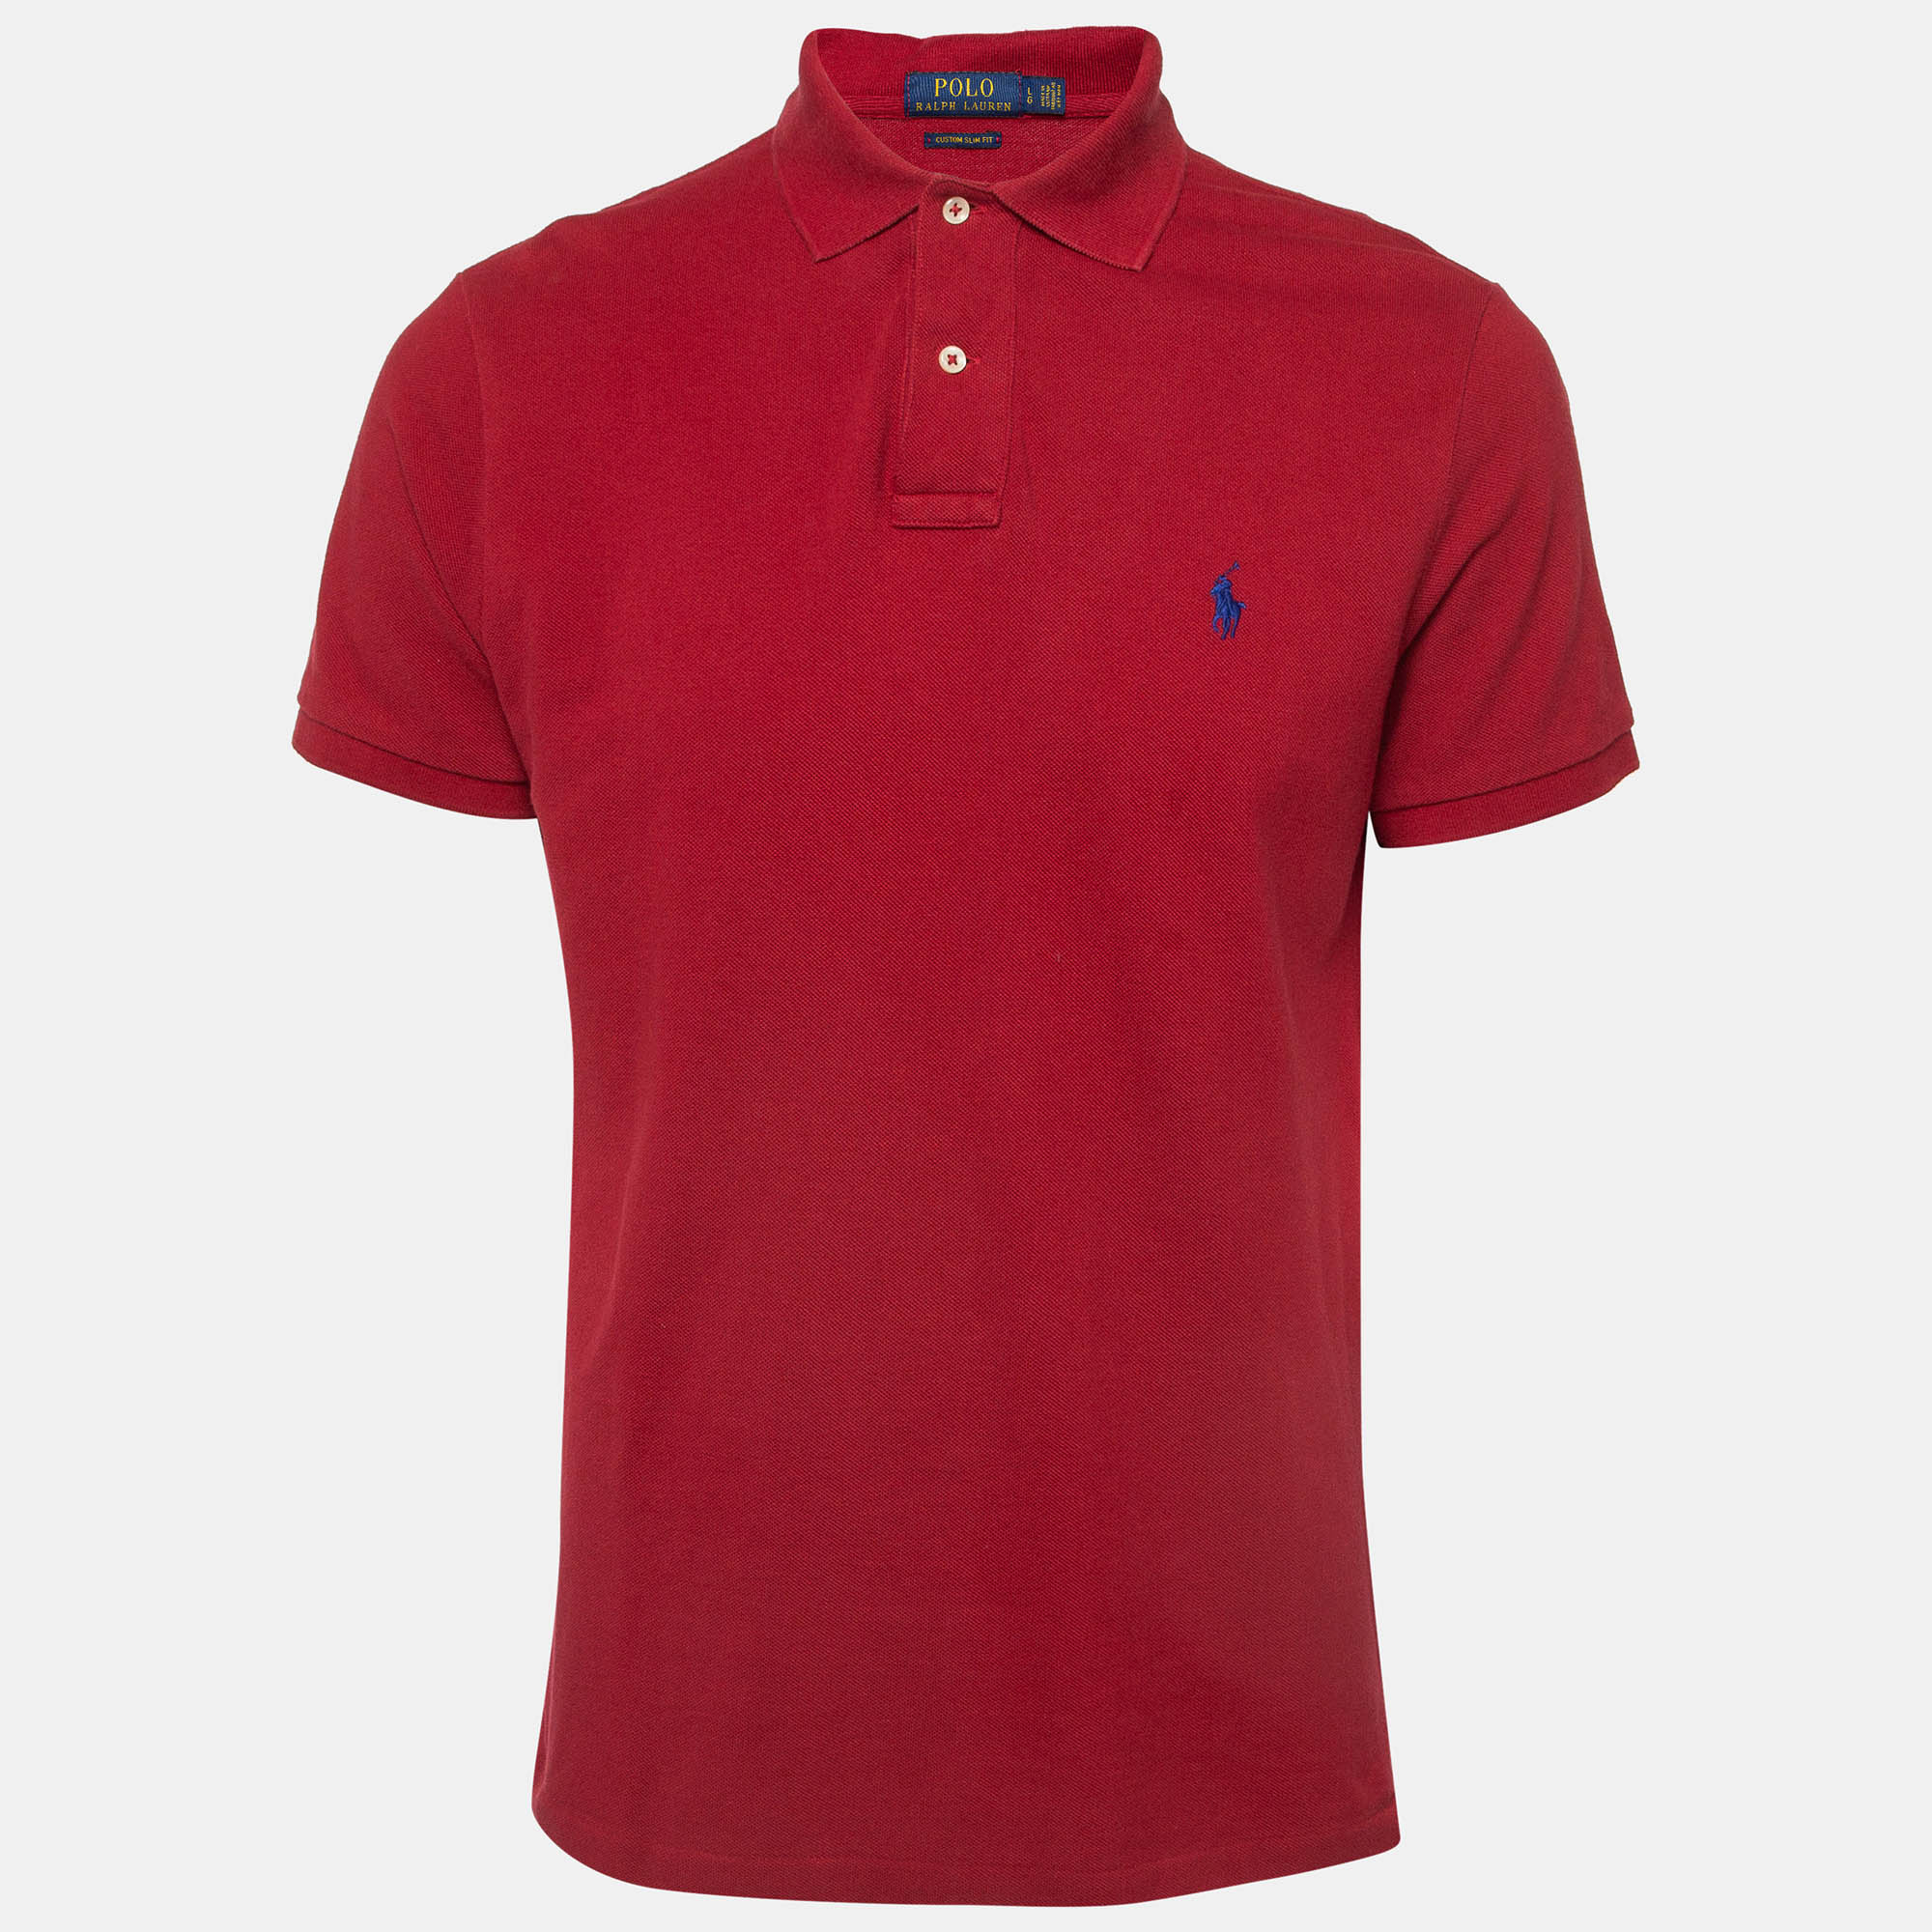 

Polo Ralph Lauren Red Cotton Pique Polo T-Shirt